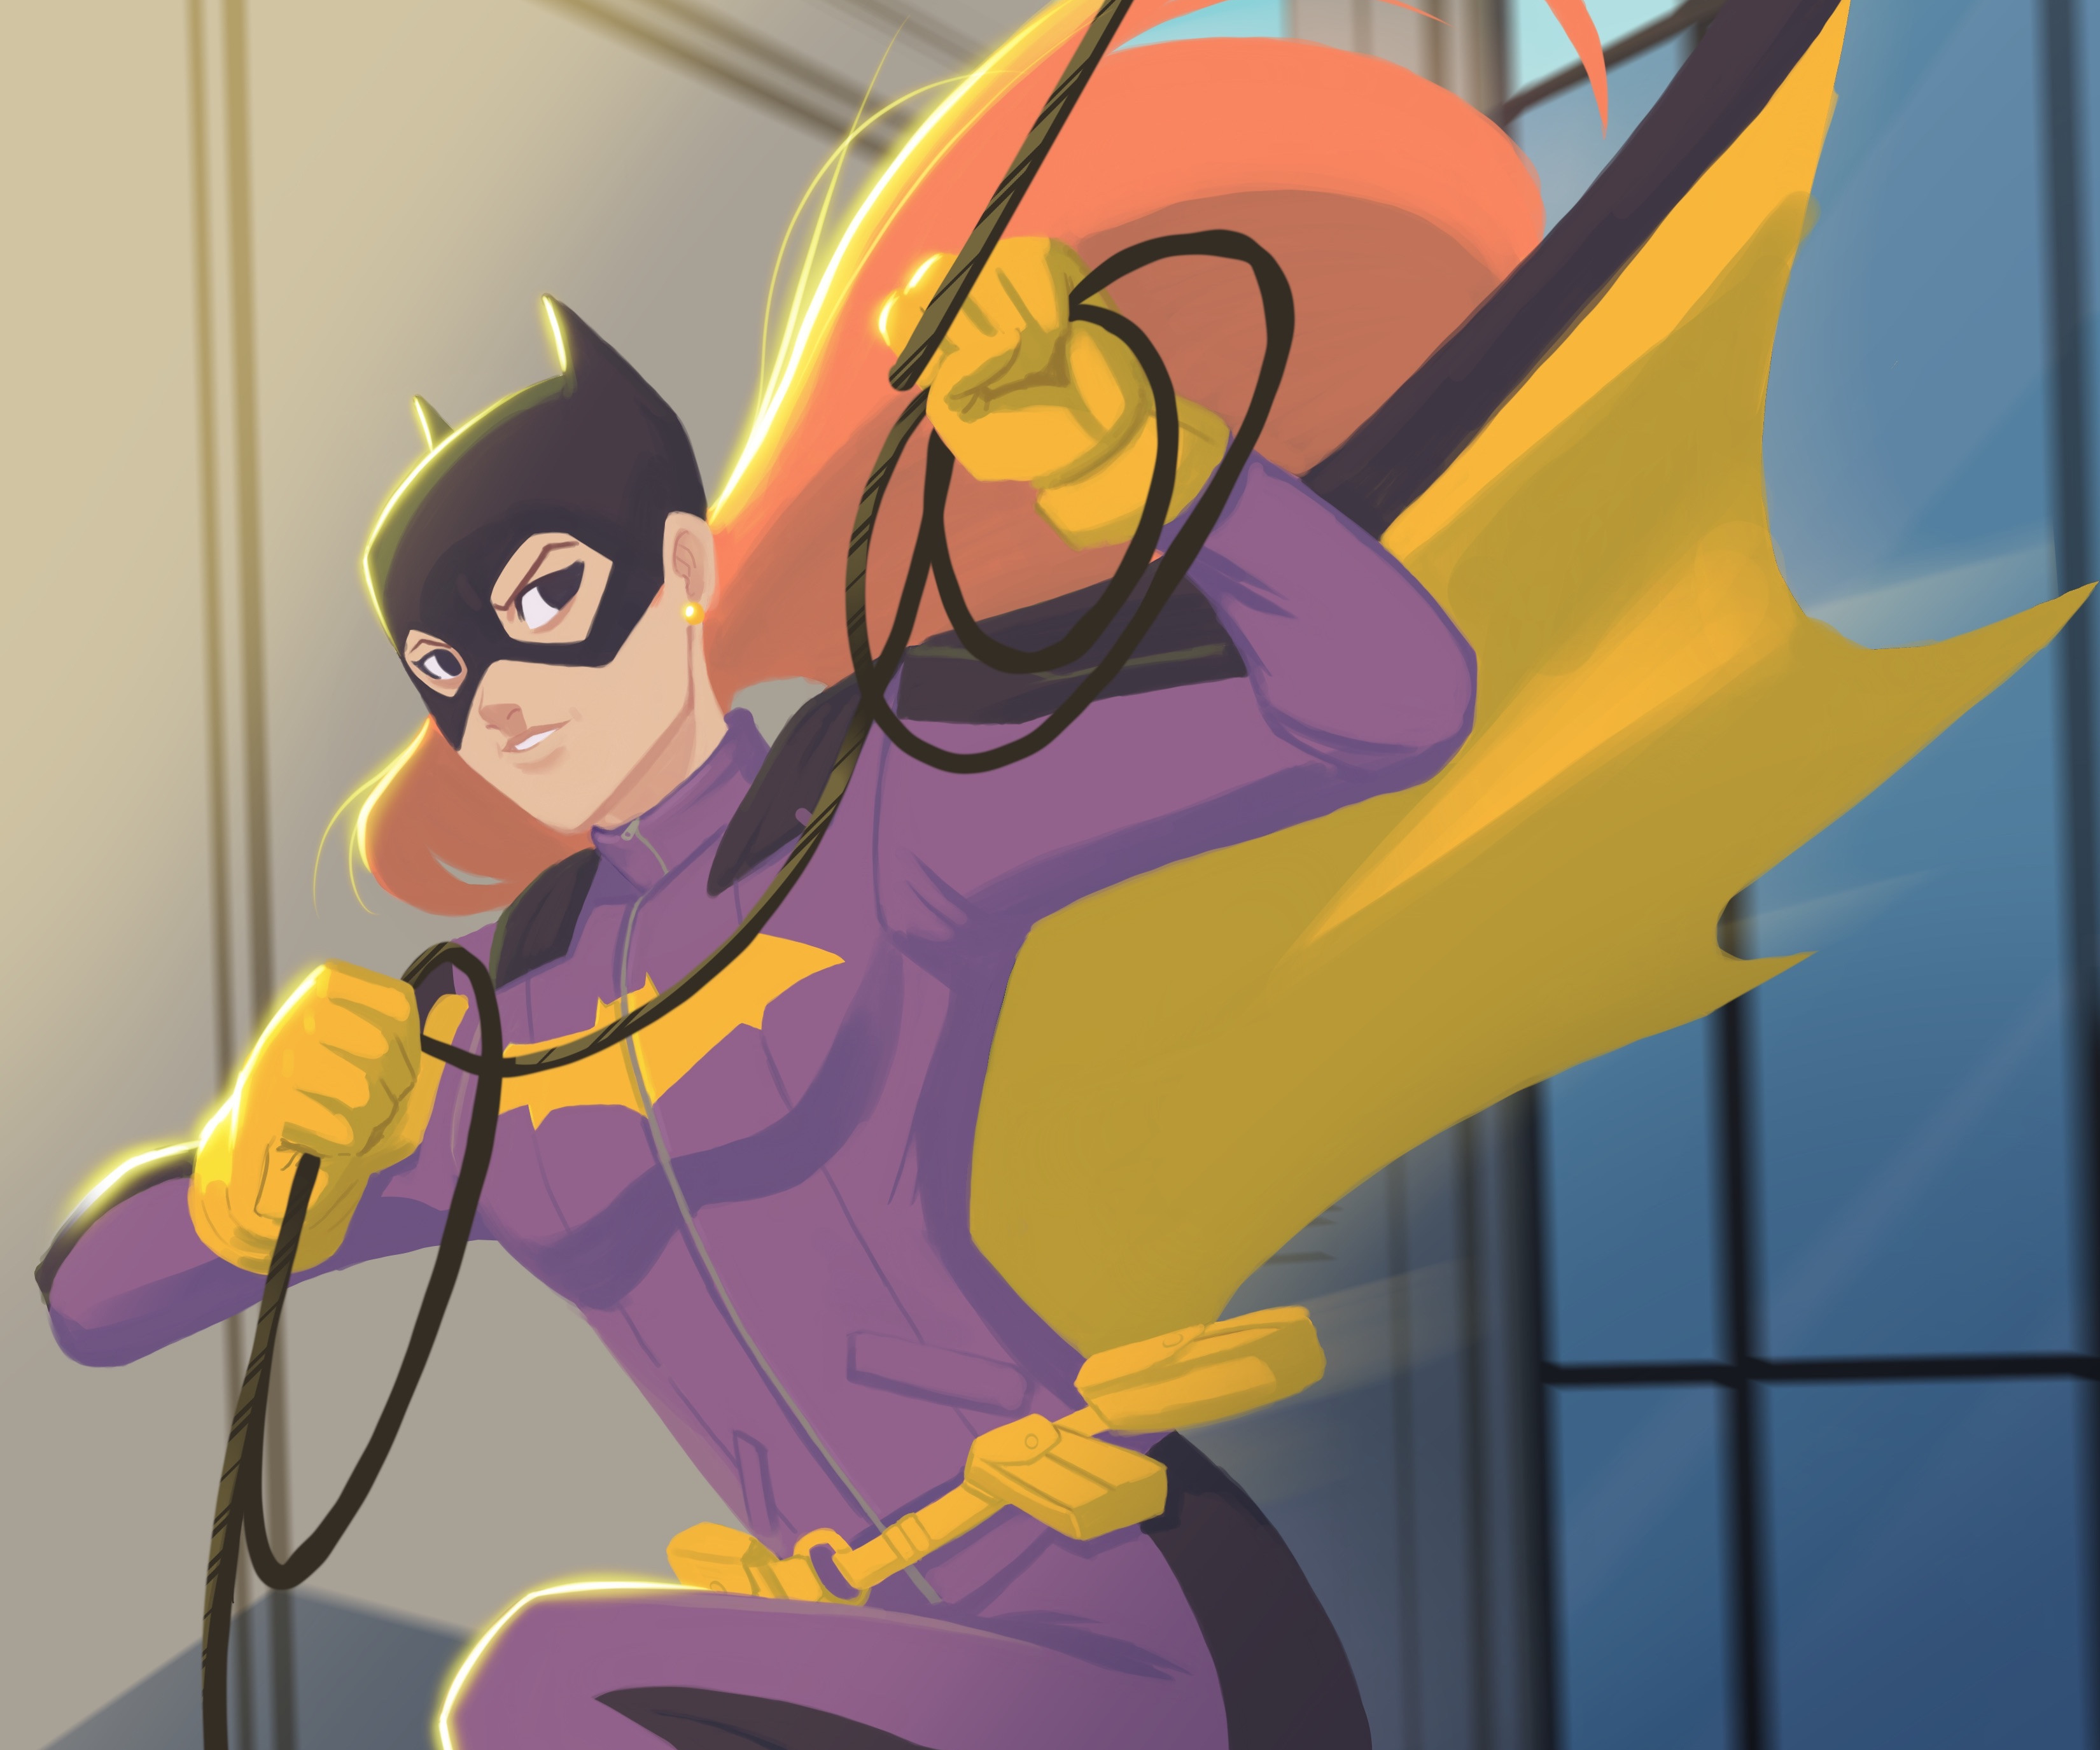 Descarga gratuita de fondo de pantalla para móvil de Historietas, The Batman, Dc Comics, Batgirl.